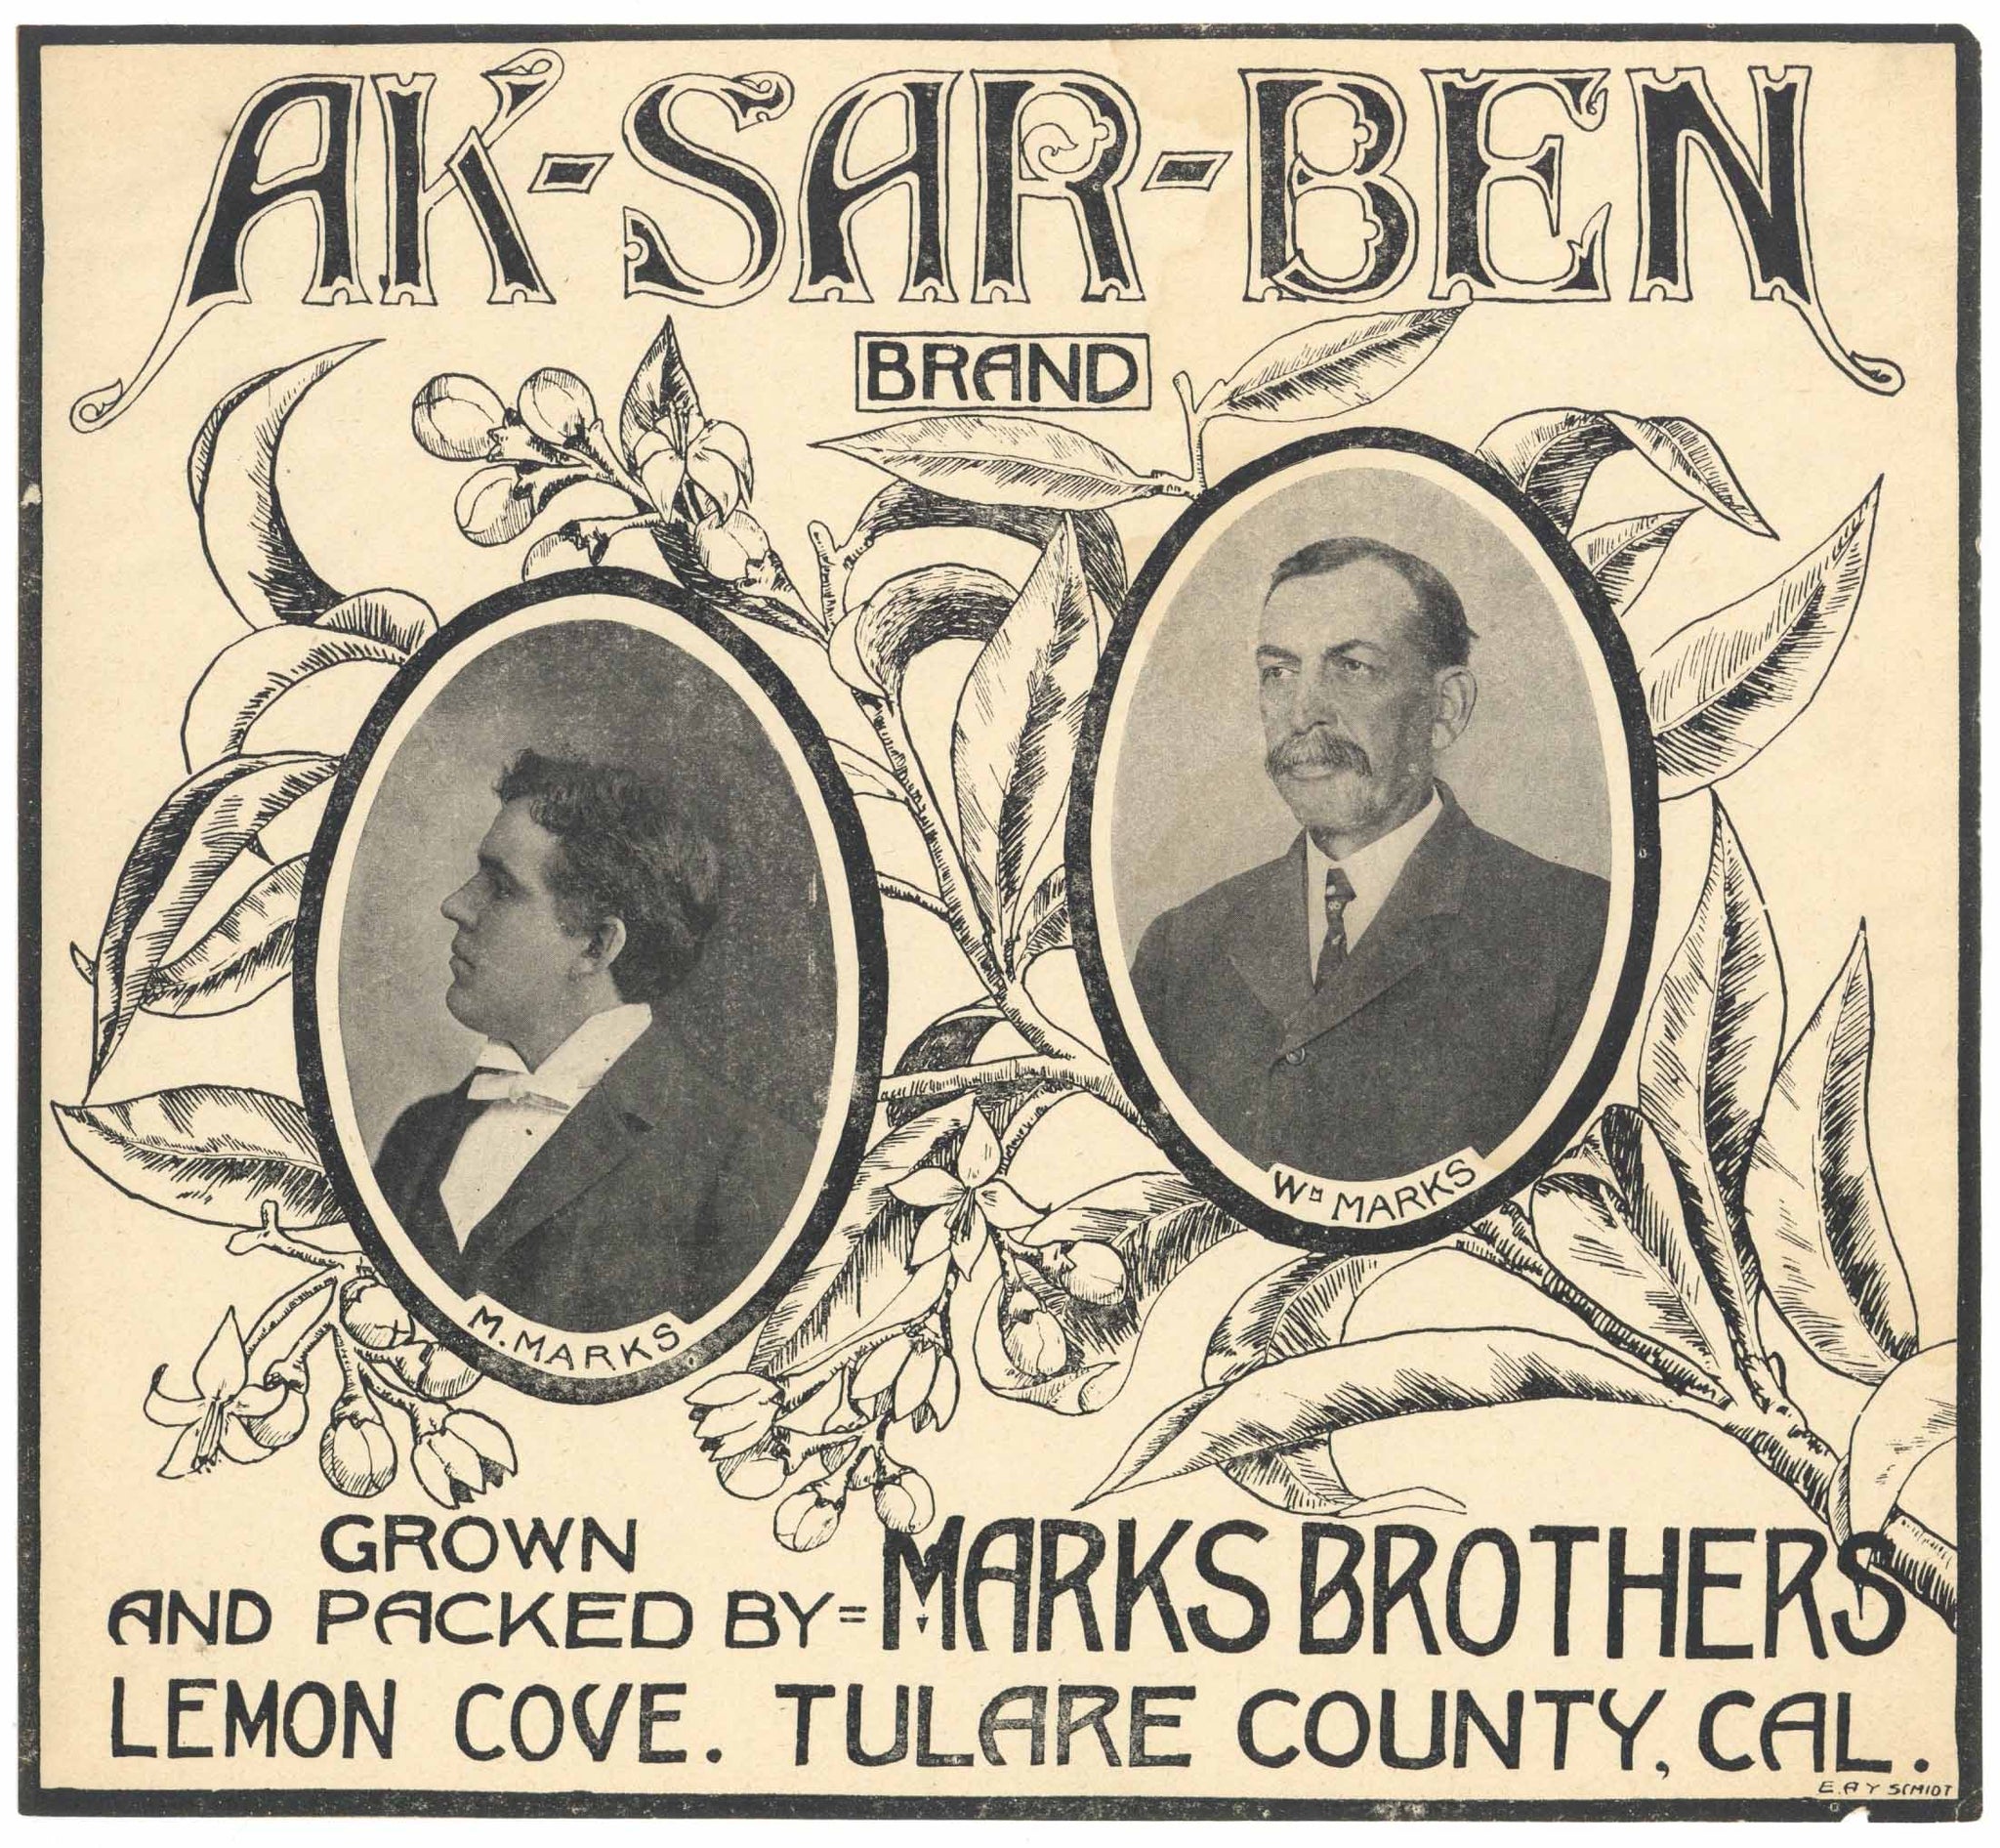 Ak-Sar-Ben Brand Vintage Orange Crate Label black